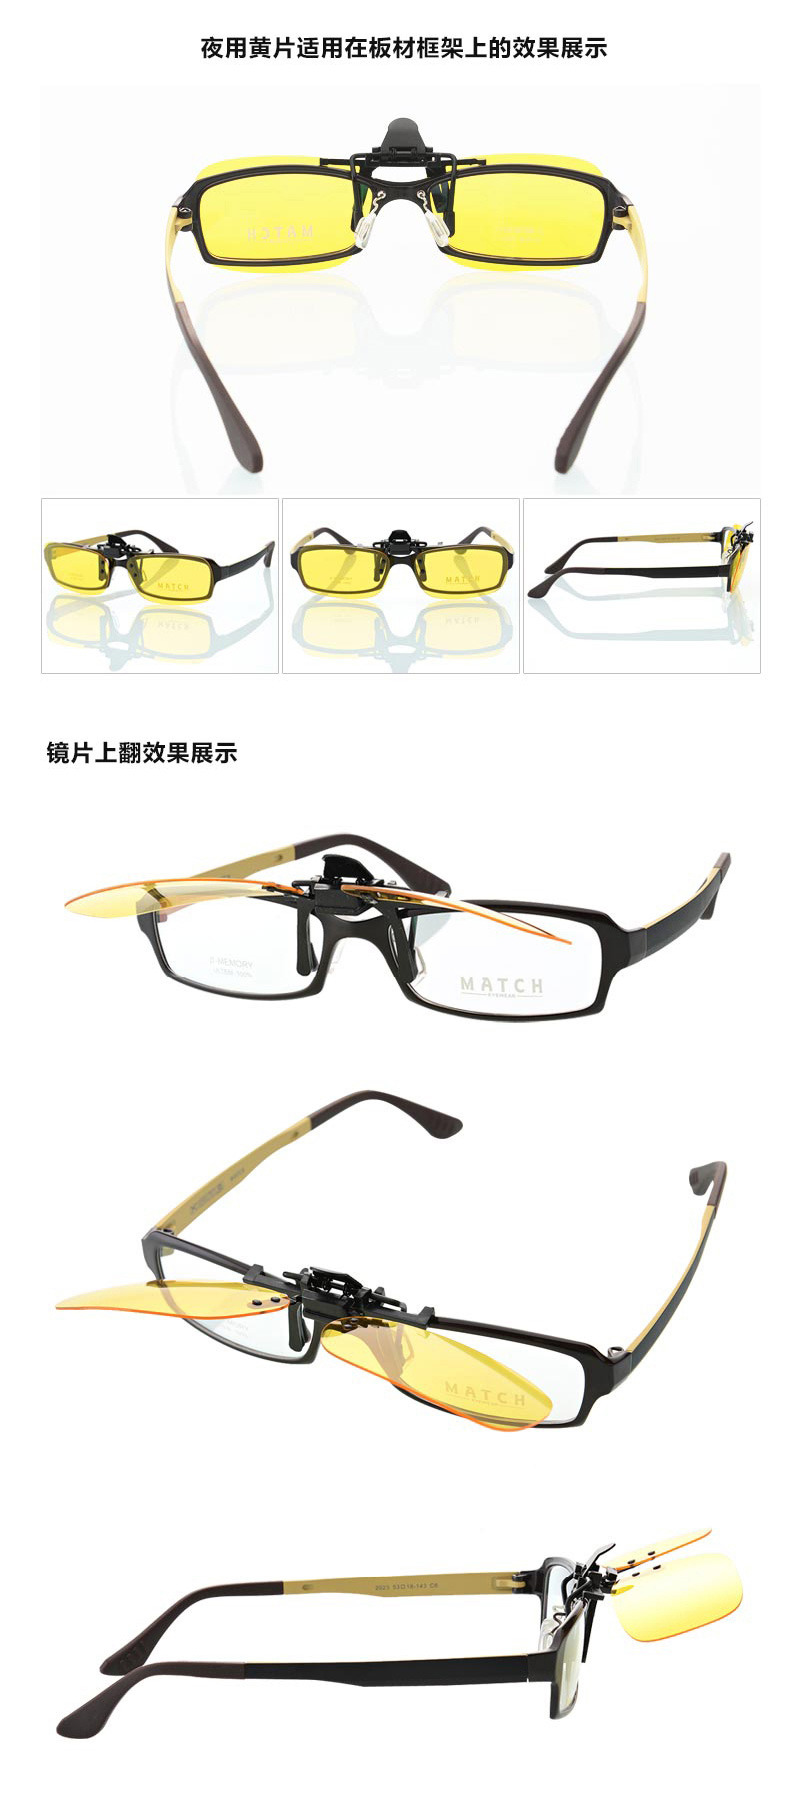 Lentile polarizate (set) detasabile pentru ochelari de vedere cu clip ( pt condus si de soare) 